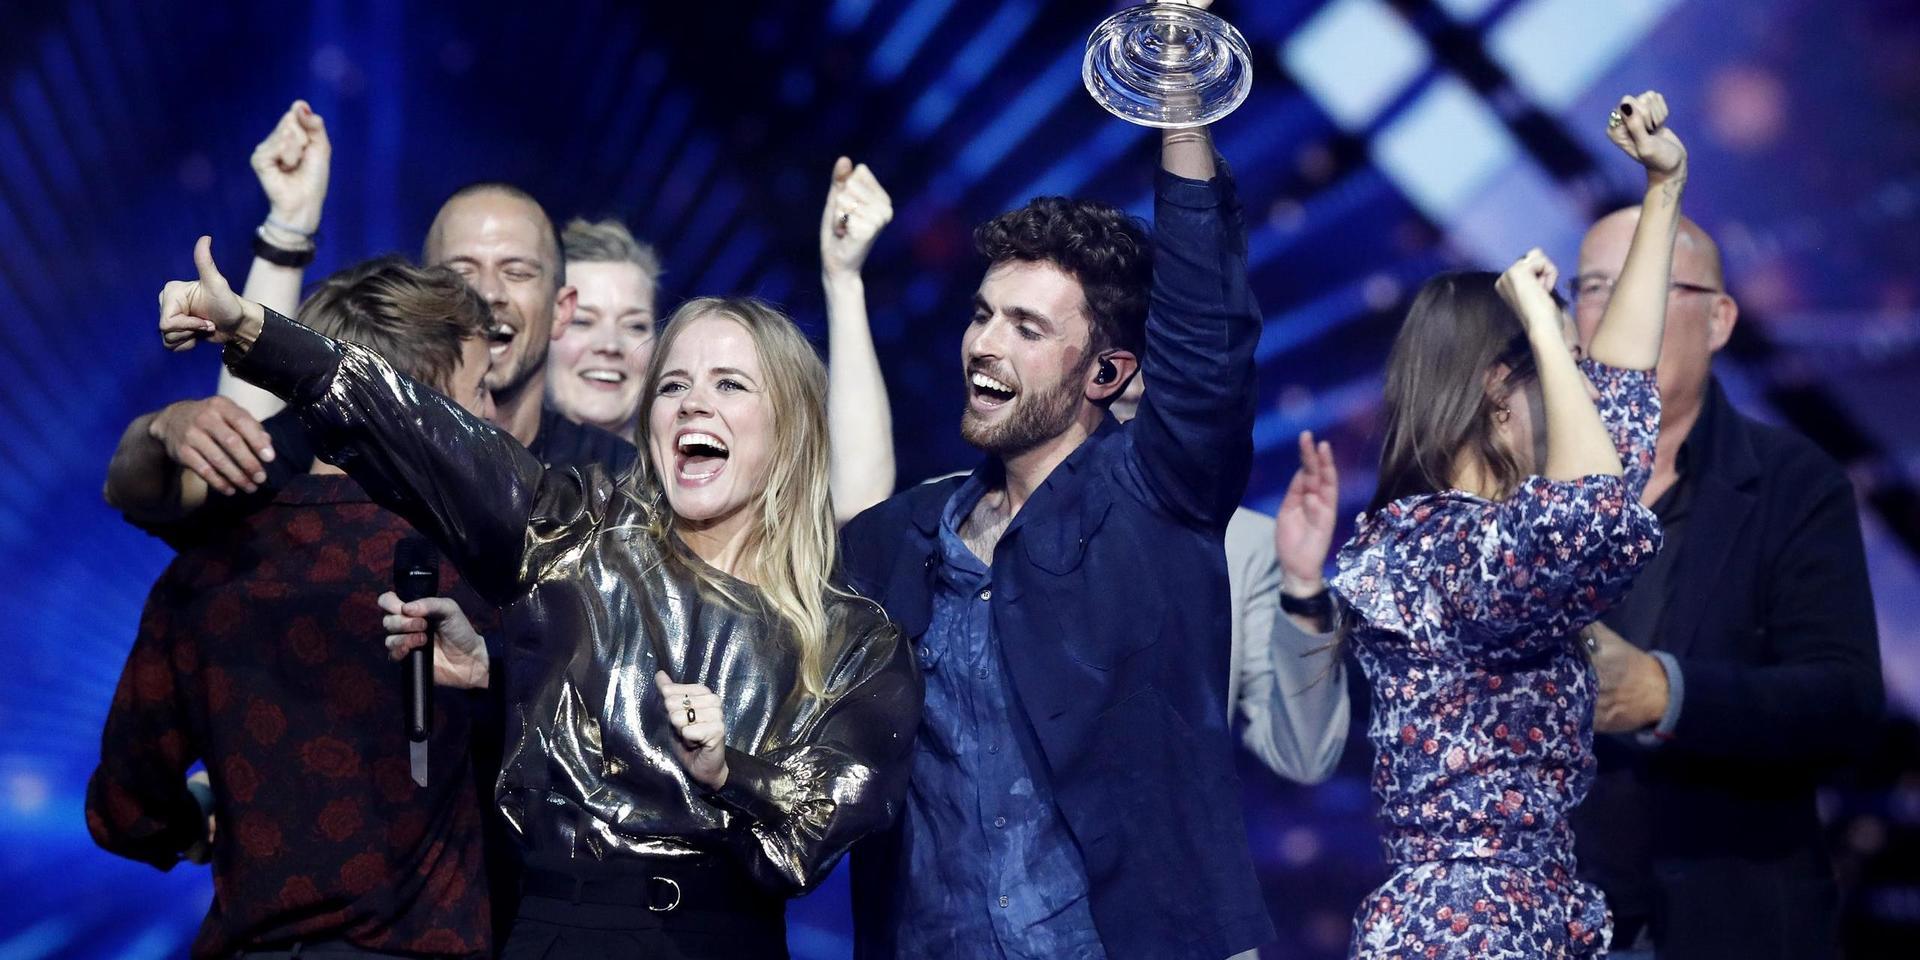 Segeryra när Nederländernas artist Duncan Laurence vann Eurovision Song Contest i Tel Aviv, Israel 2019. Men årets tävling i Rotterdam ställdes in på grund av coronapandemin.